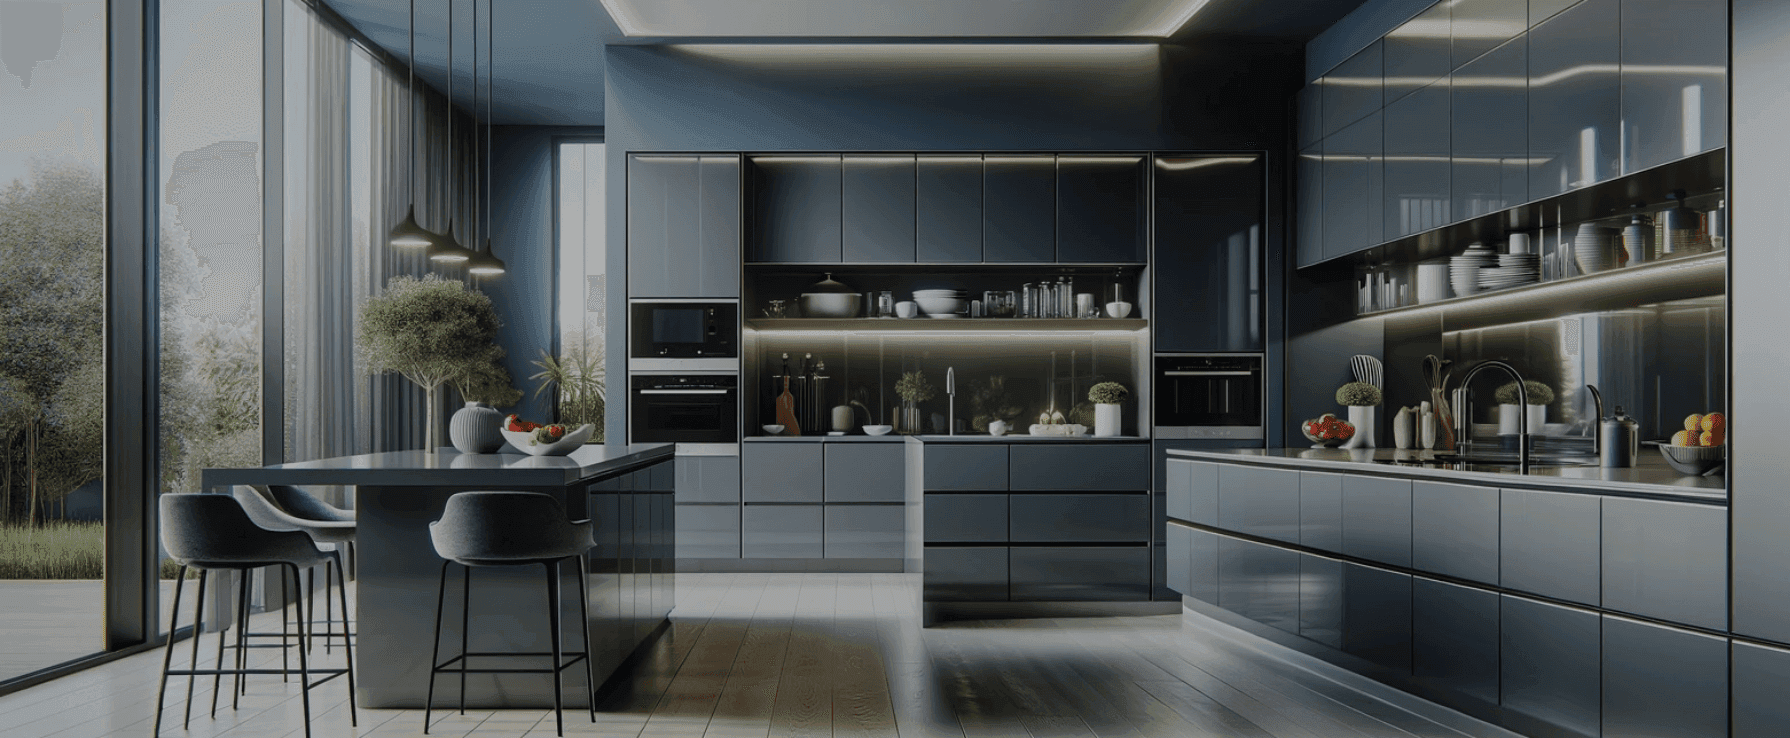 Eine moderne Küche mit hochglänzenden grauen Schränken und Arbeitsplatten. Die Küche zeichnet sich durch schlichte, minimalistische Designelemente mit integrierten Geräten aus.